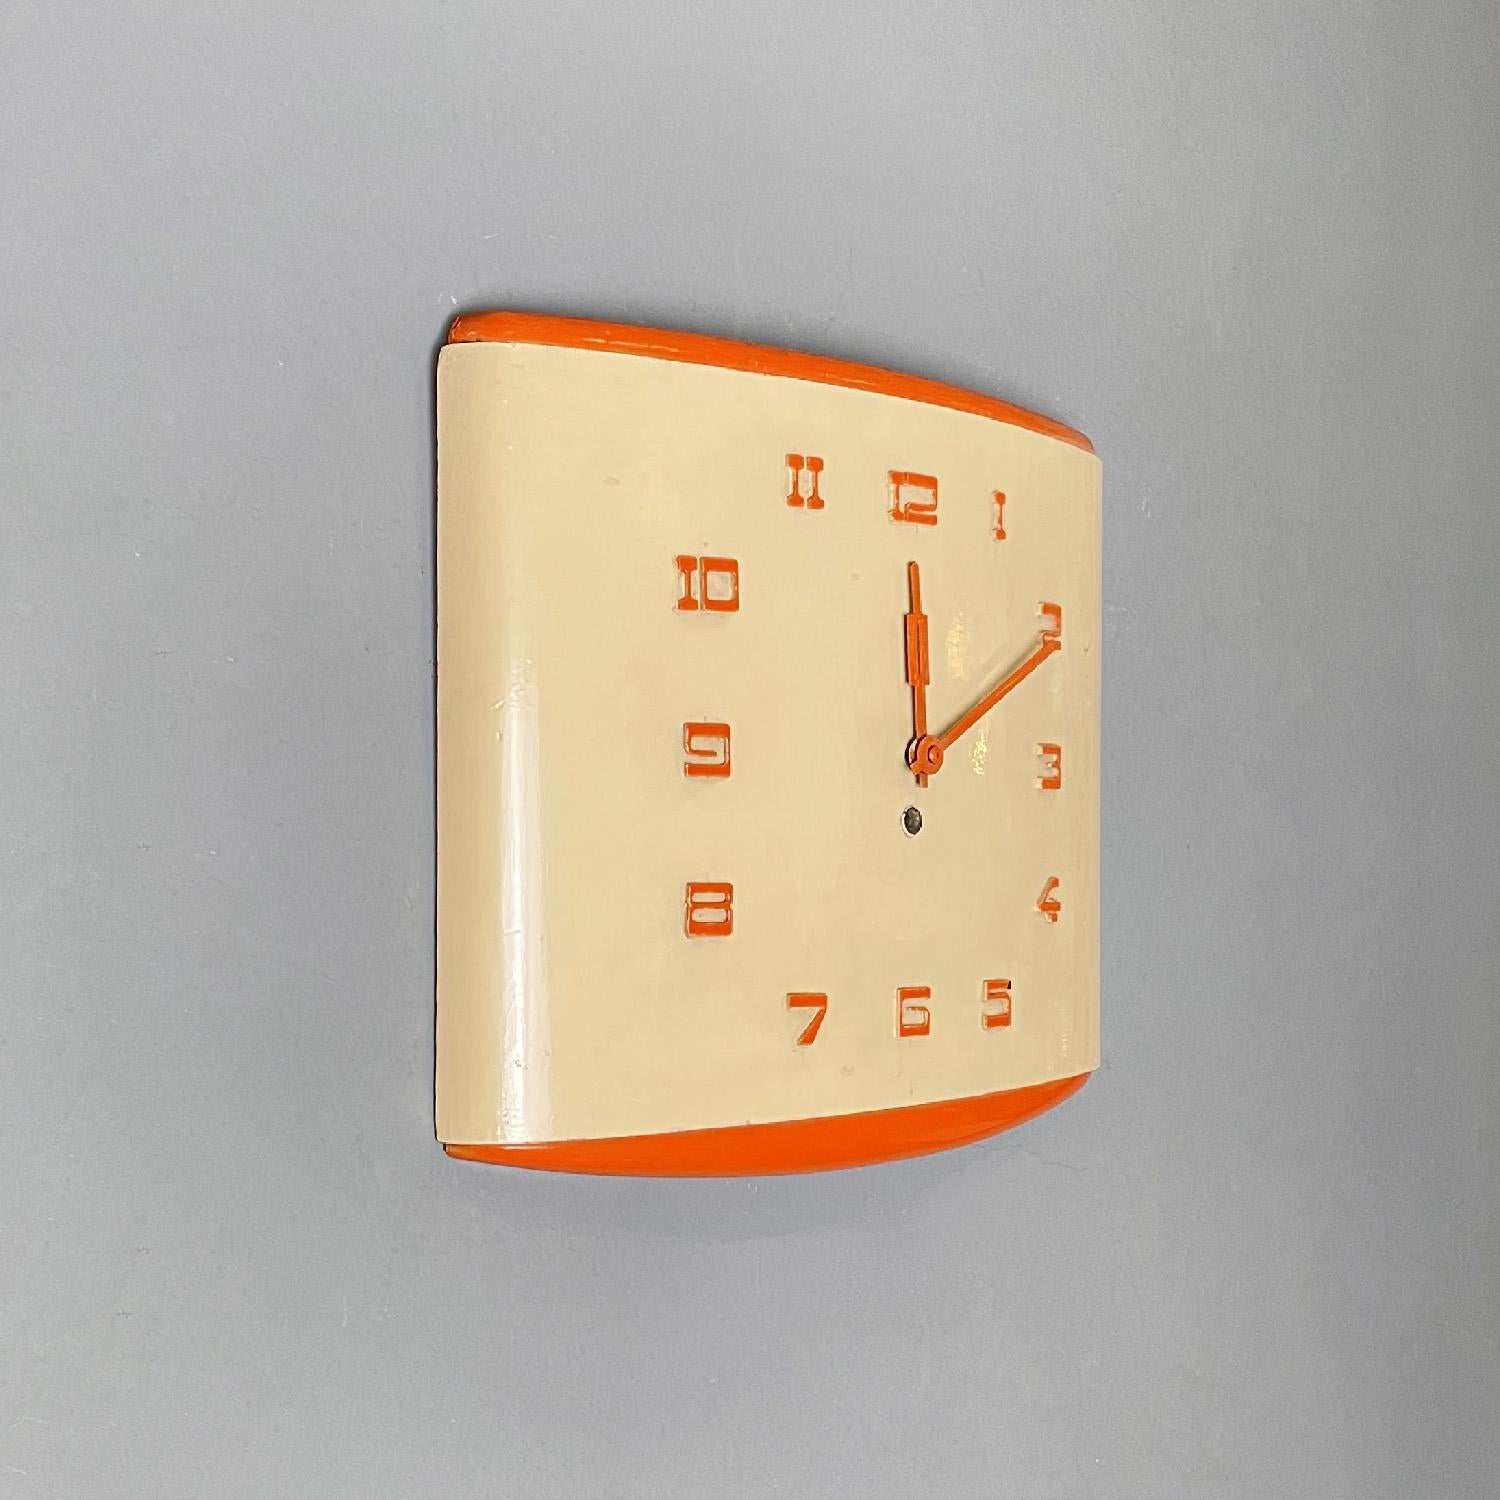 Horloge murale rectangulaire orange et beige, Italie, milieu du siècle dernier, années 1960
Horloge murale rectangulaire en bois laqué jaune crème et orange. La structure est légèrement bombée et arrondie vers l'extérieur. Les chiffres, légèrement